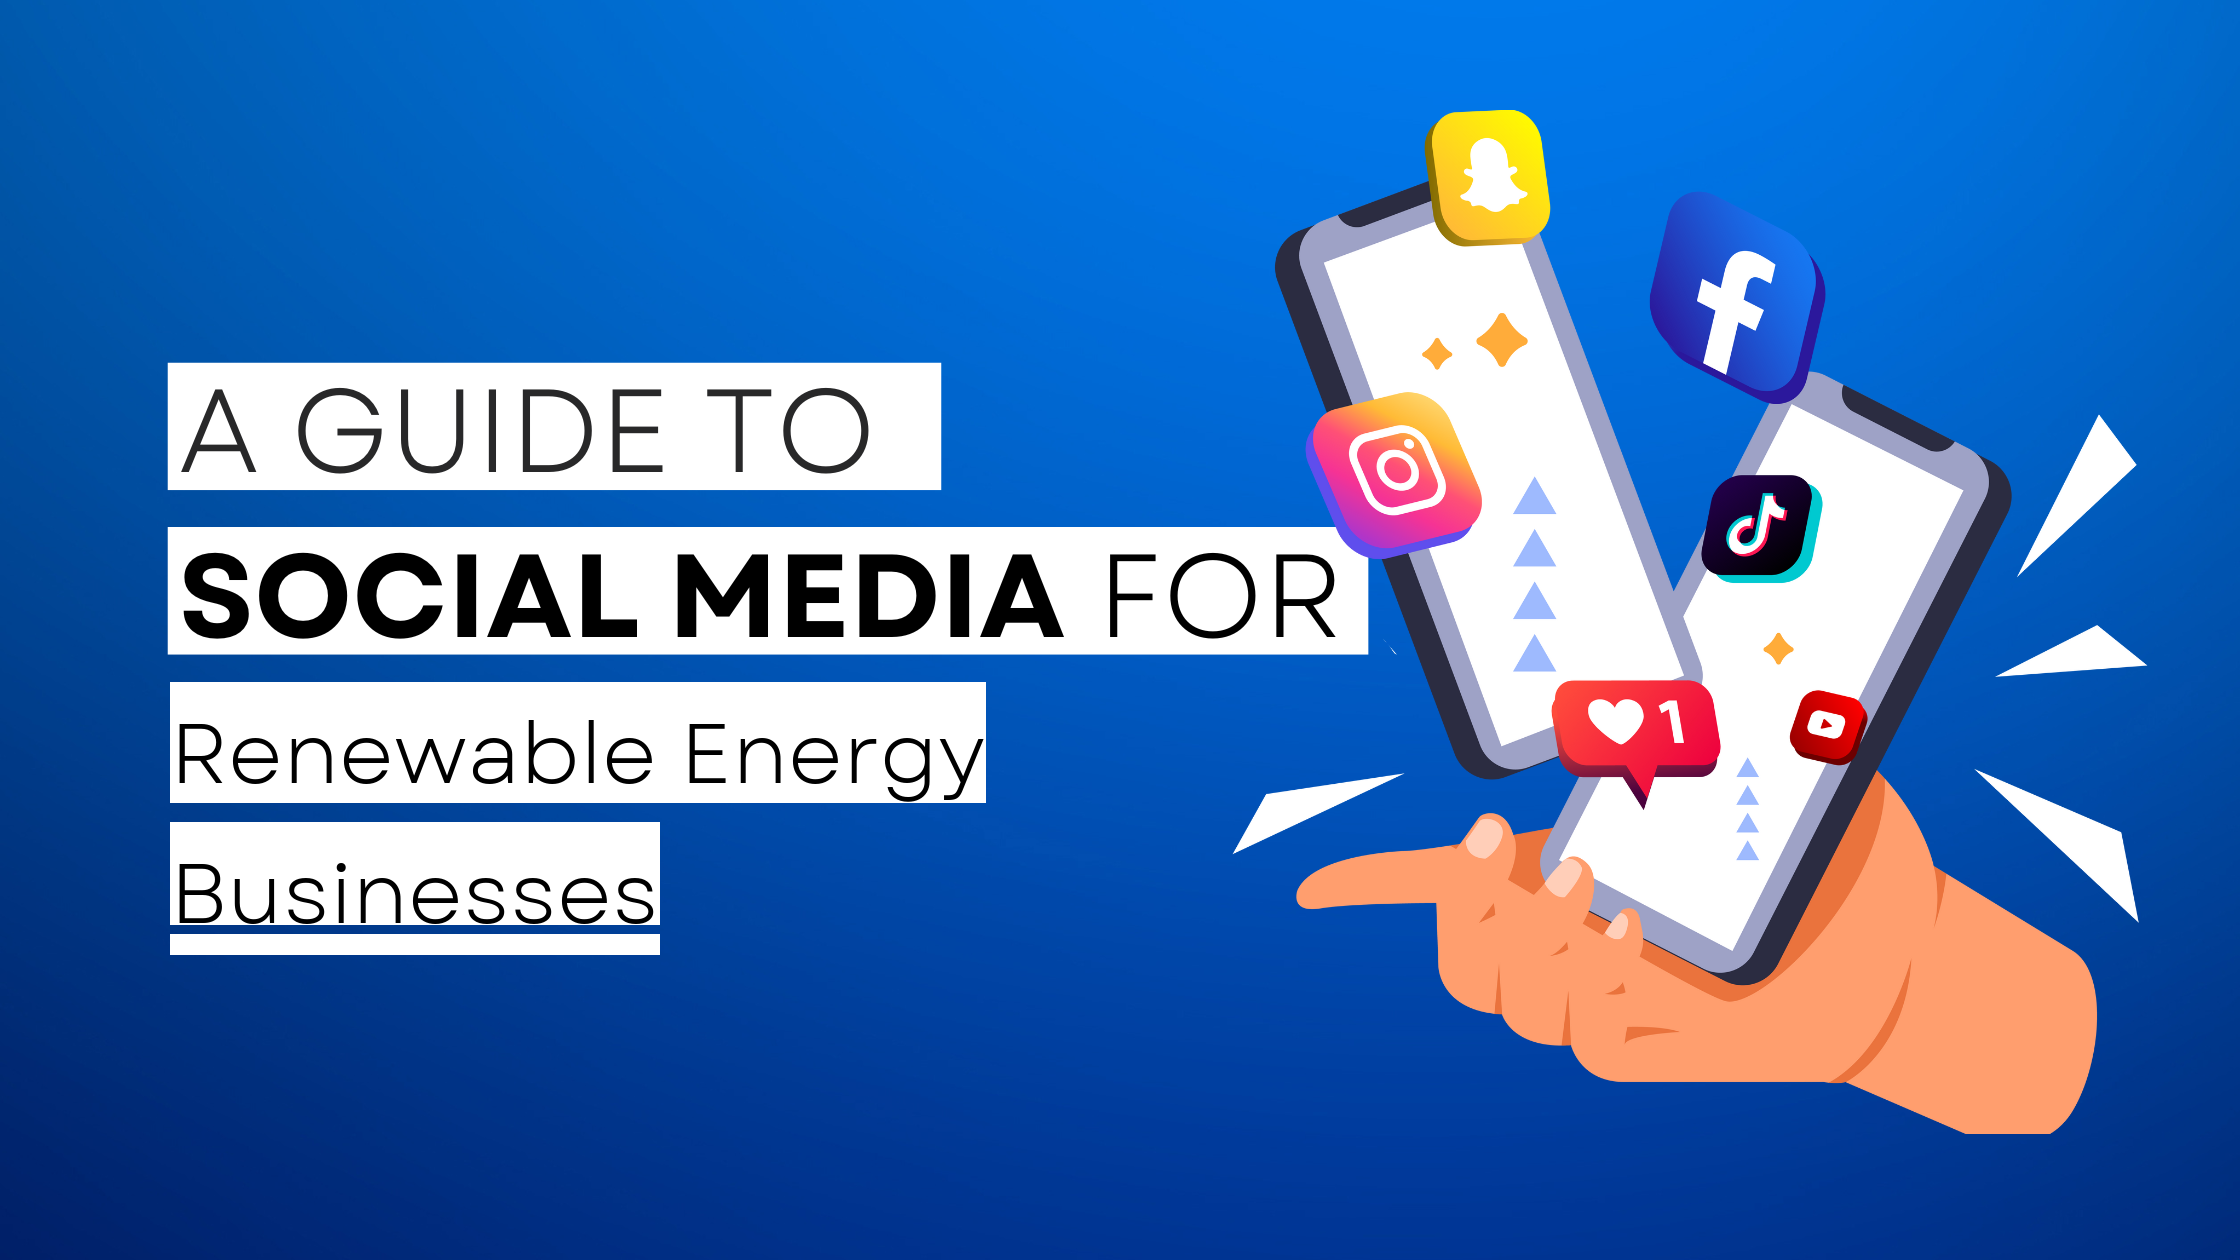 How to start Renewable Energy on social media